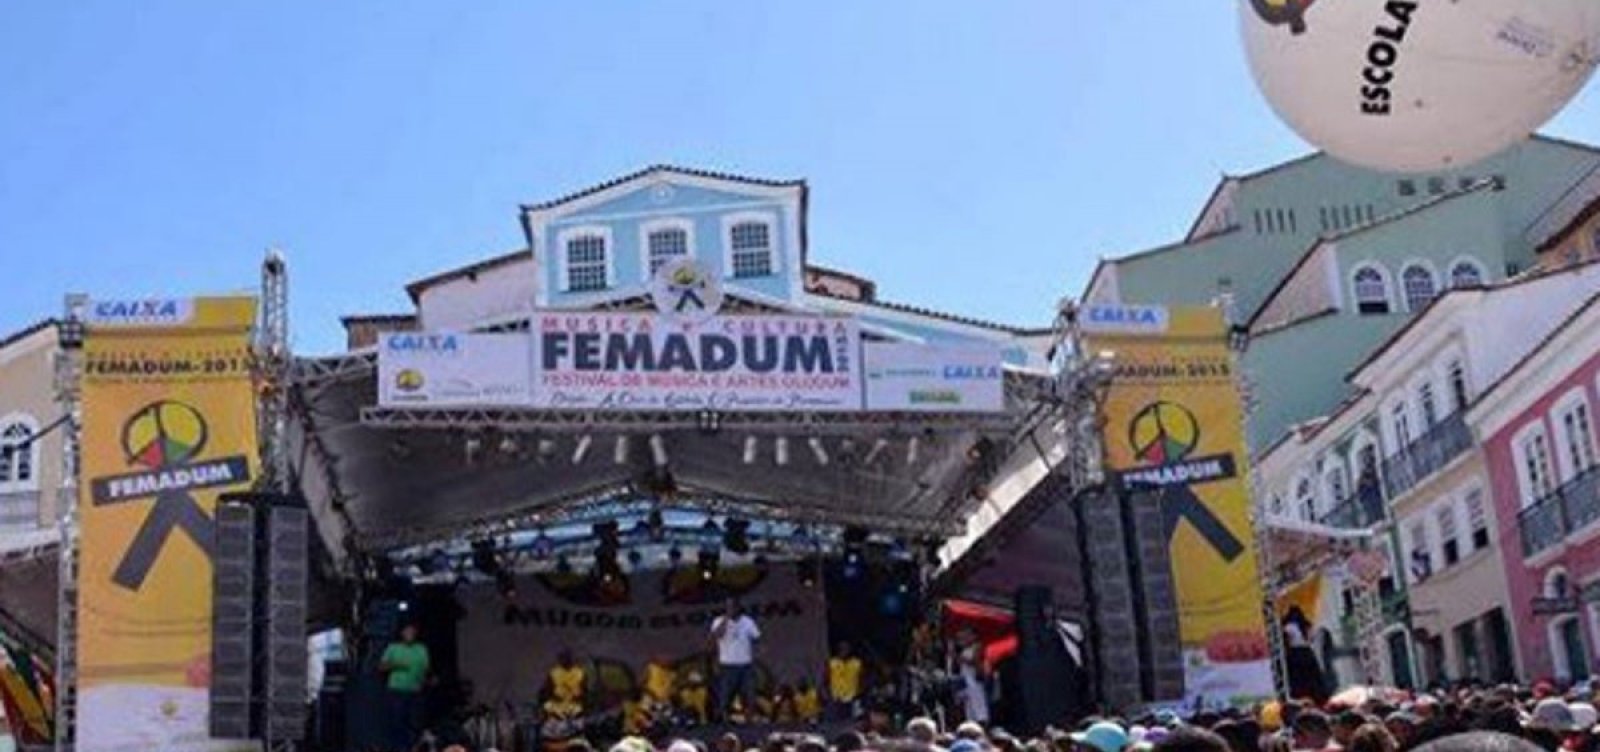 Pelourinho recebe festival do Olodum aberto ao público neste final de semana